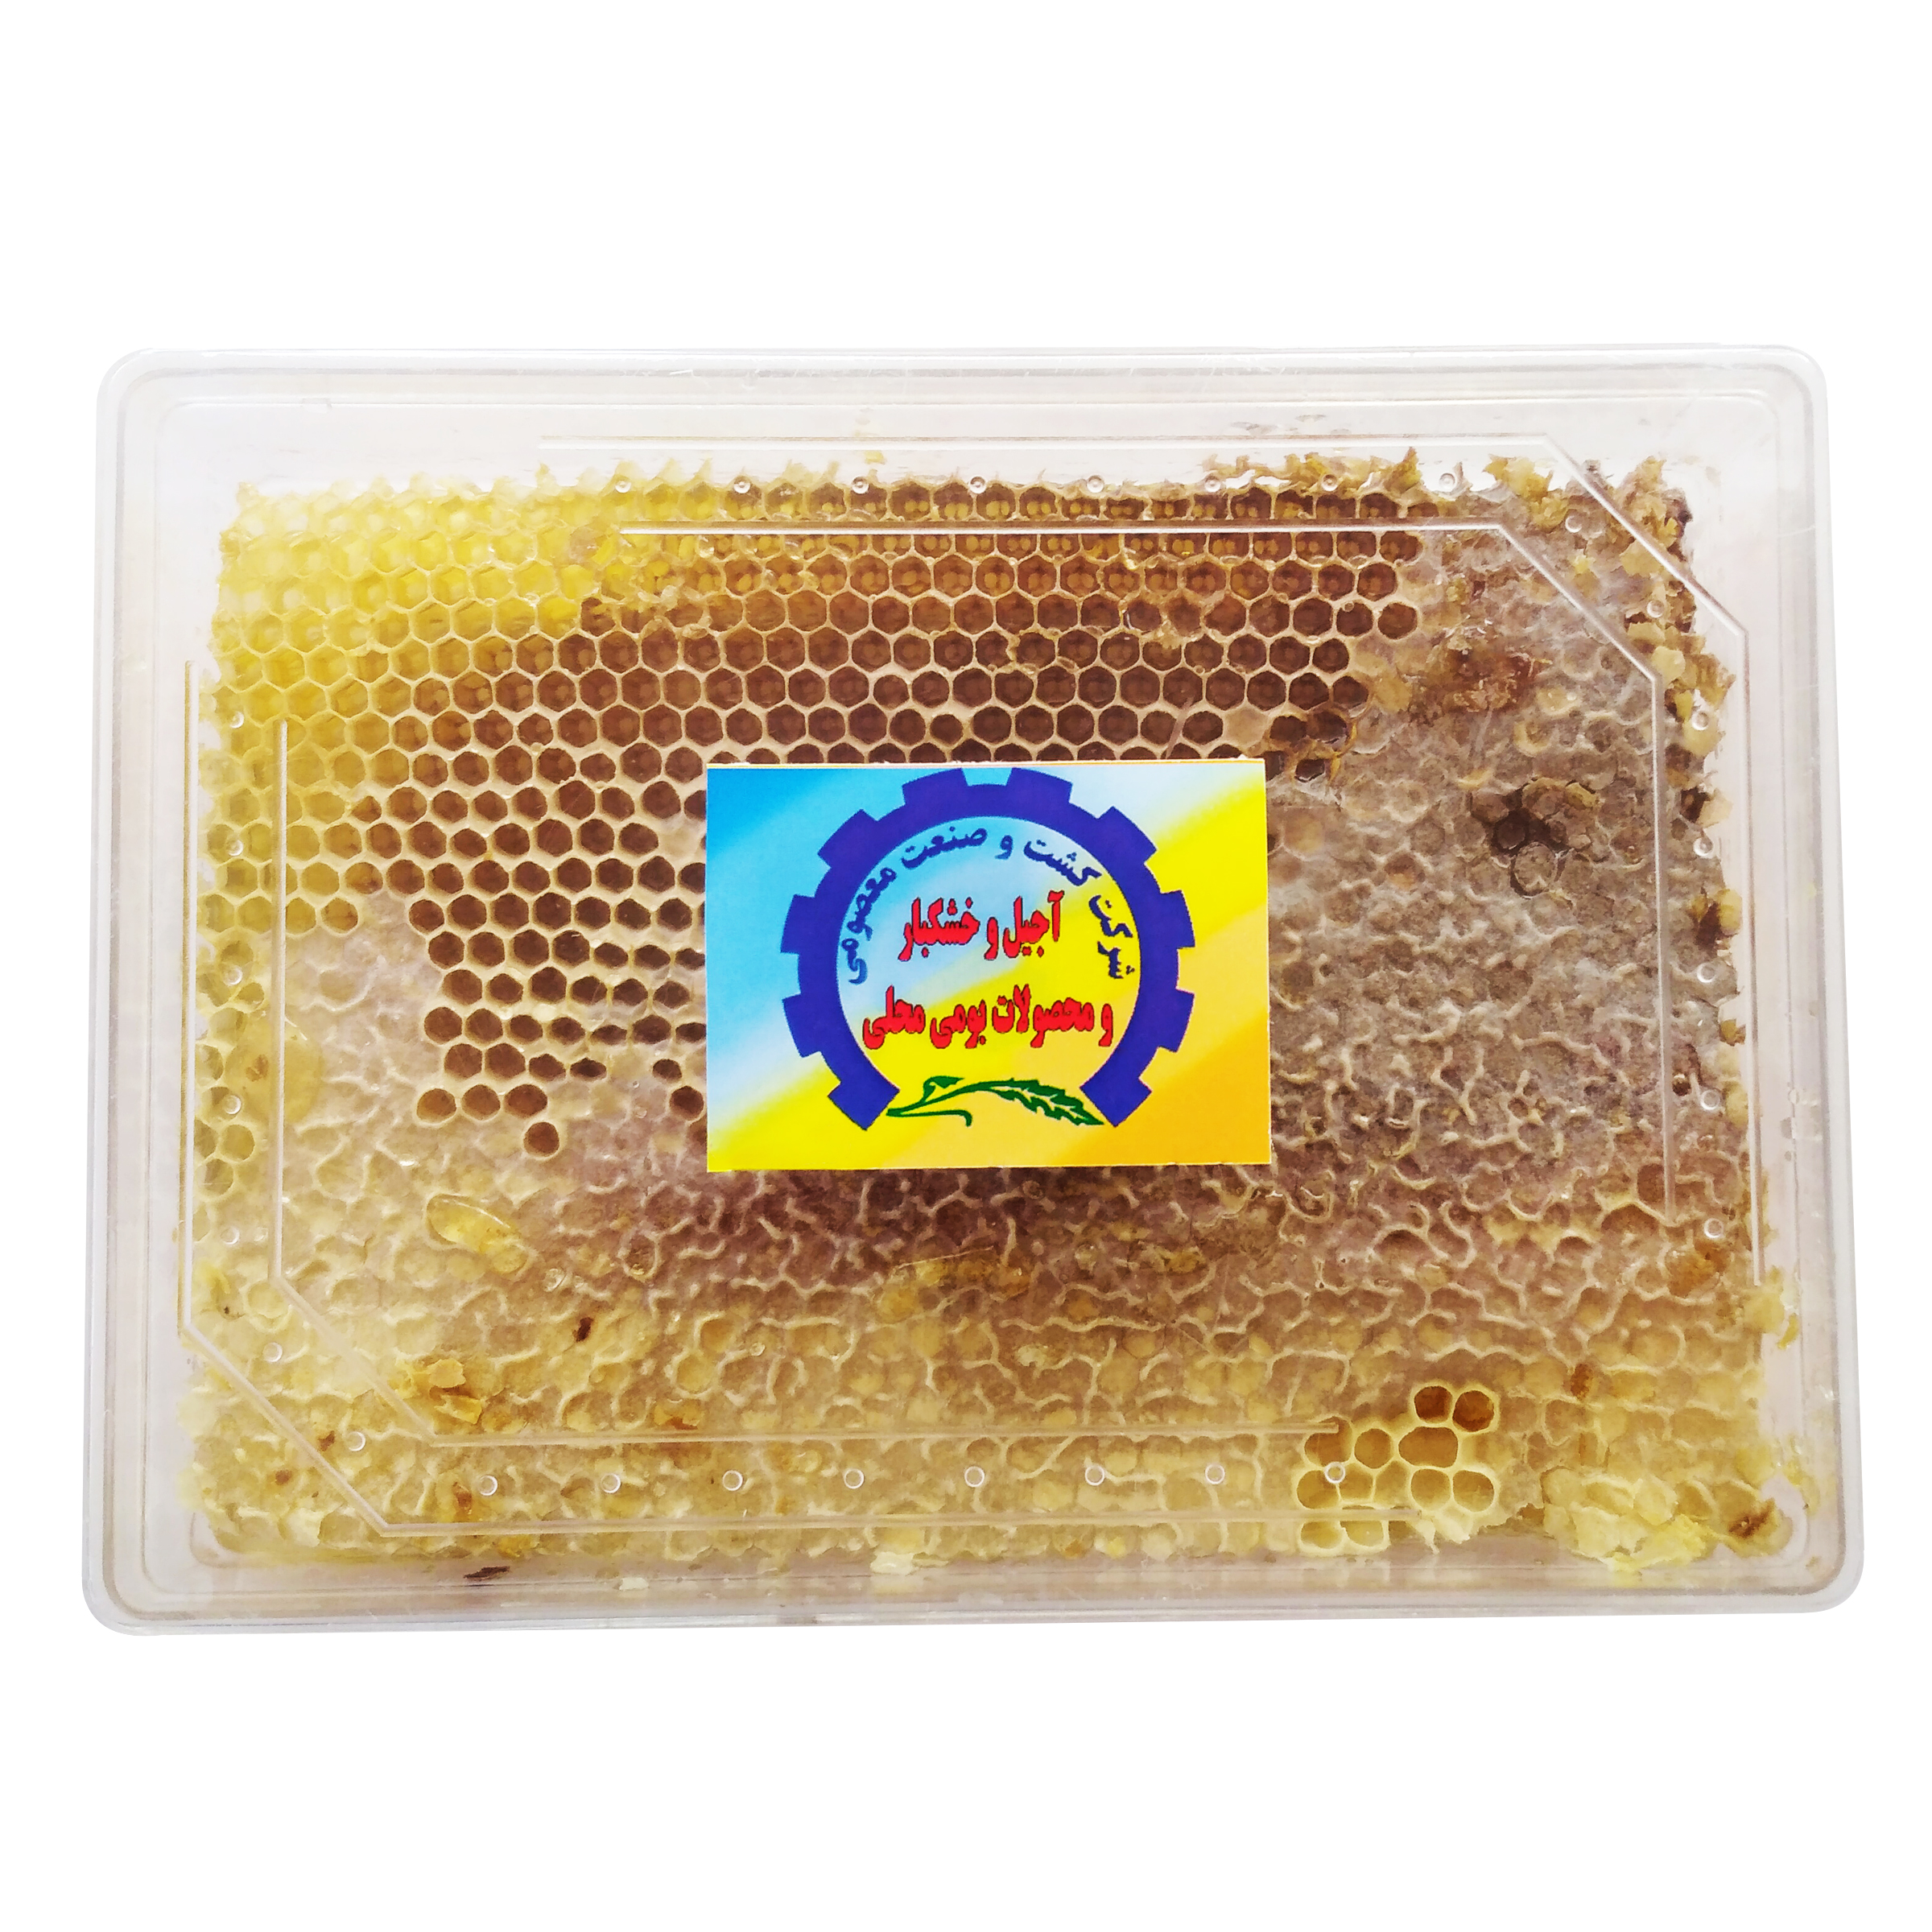 عسل با موم شرکت کشت و صنعت معصومی - 900 گرم